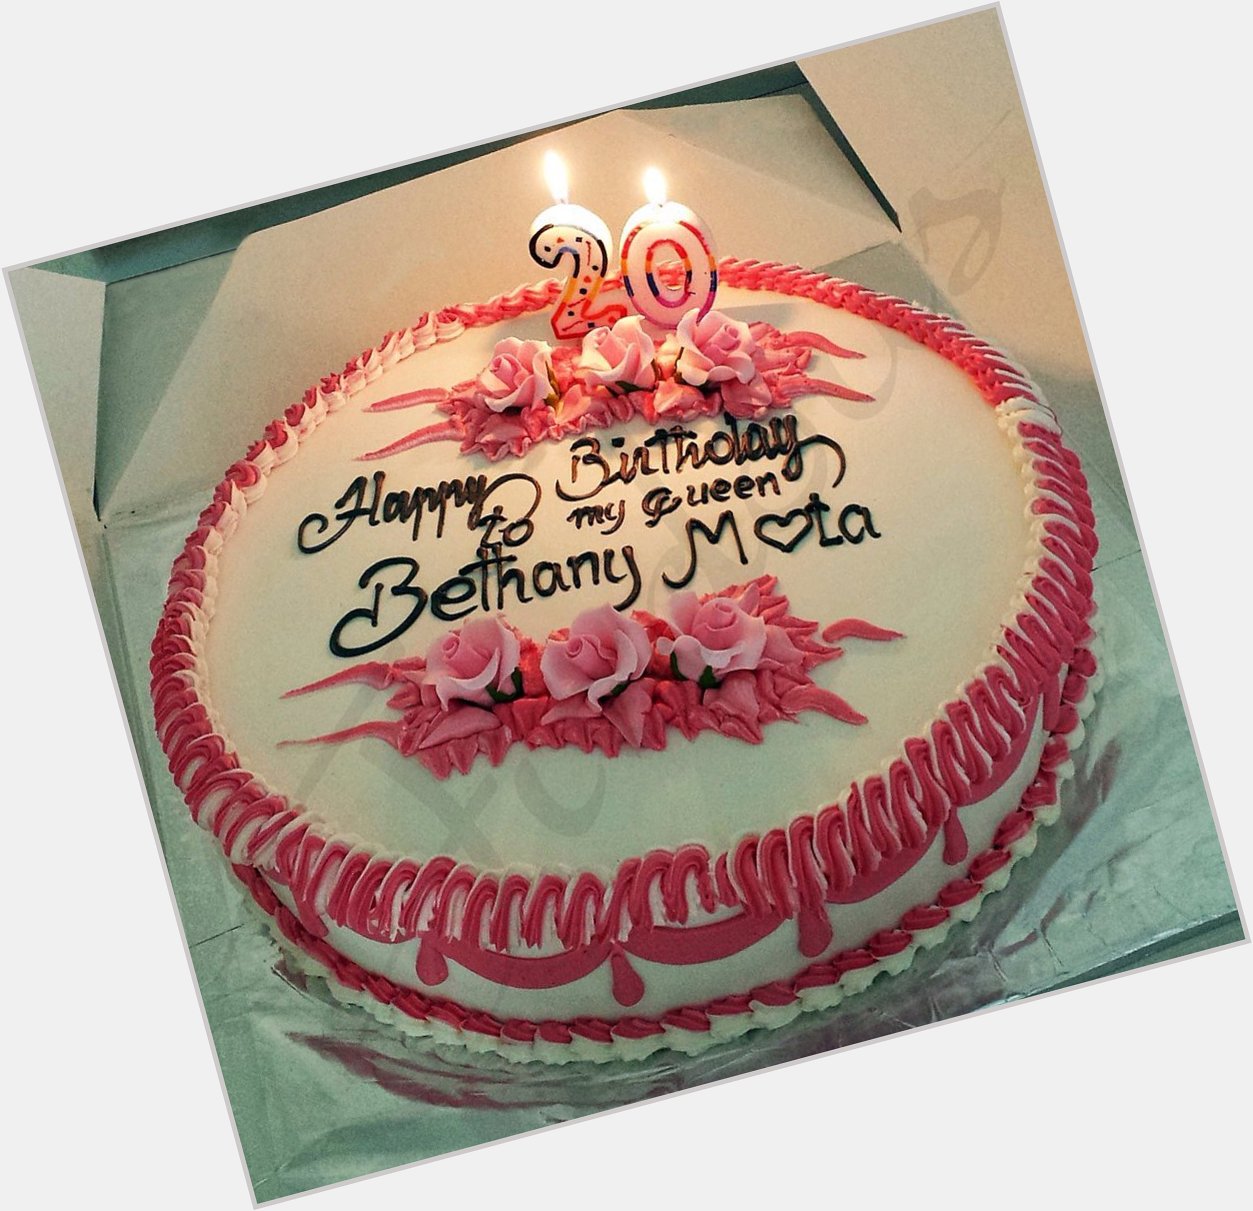 Happy birthday Bethany Mota \20\   